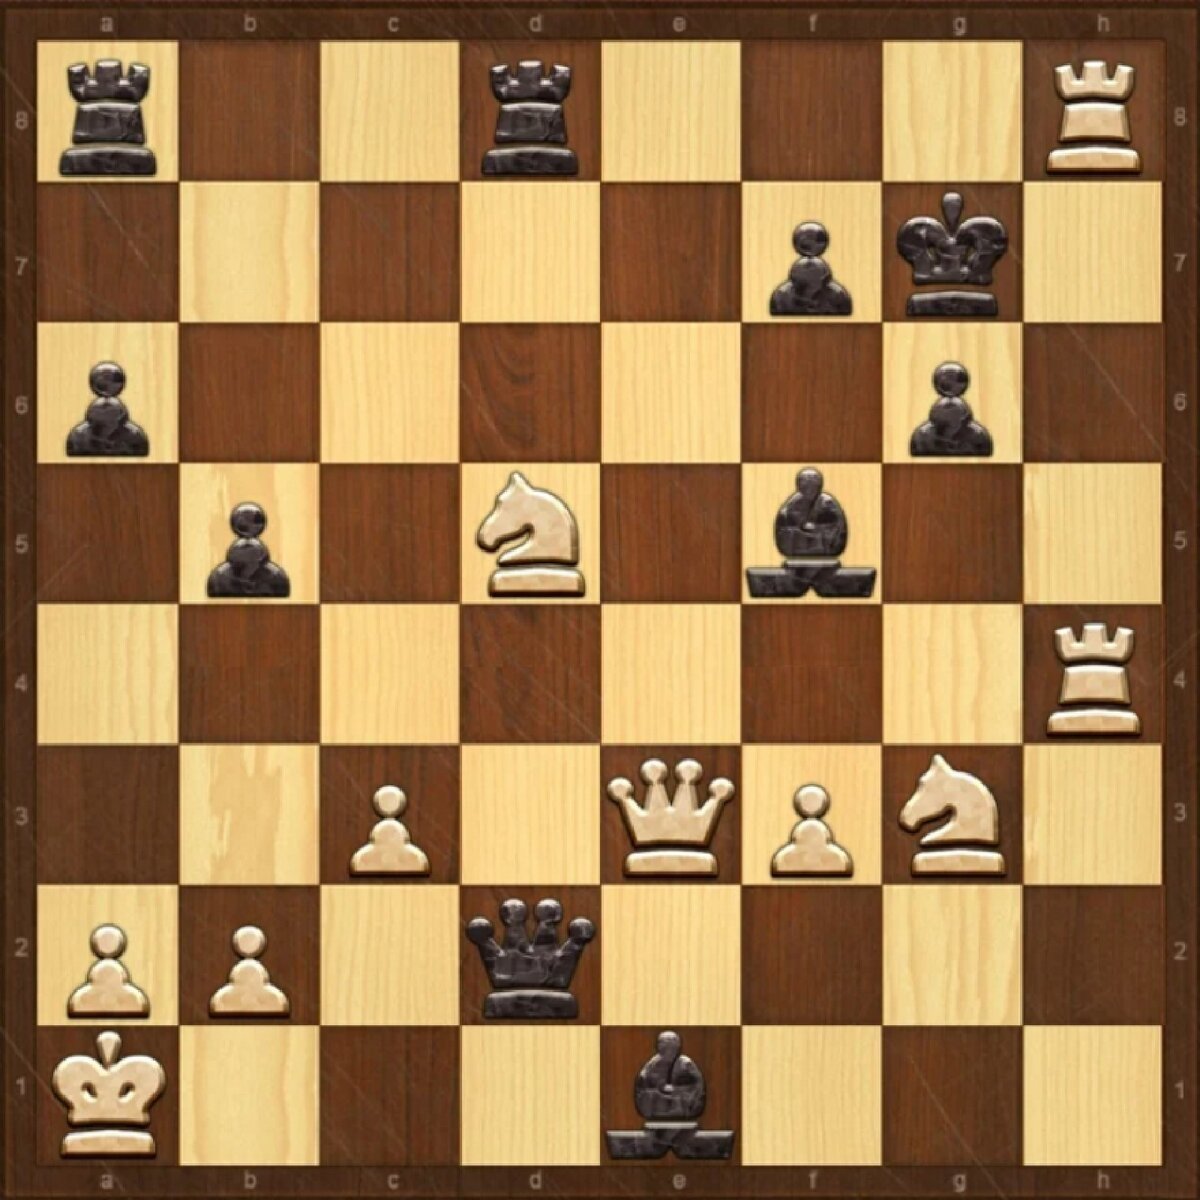 Задачи по шахматам мат в 1 ход